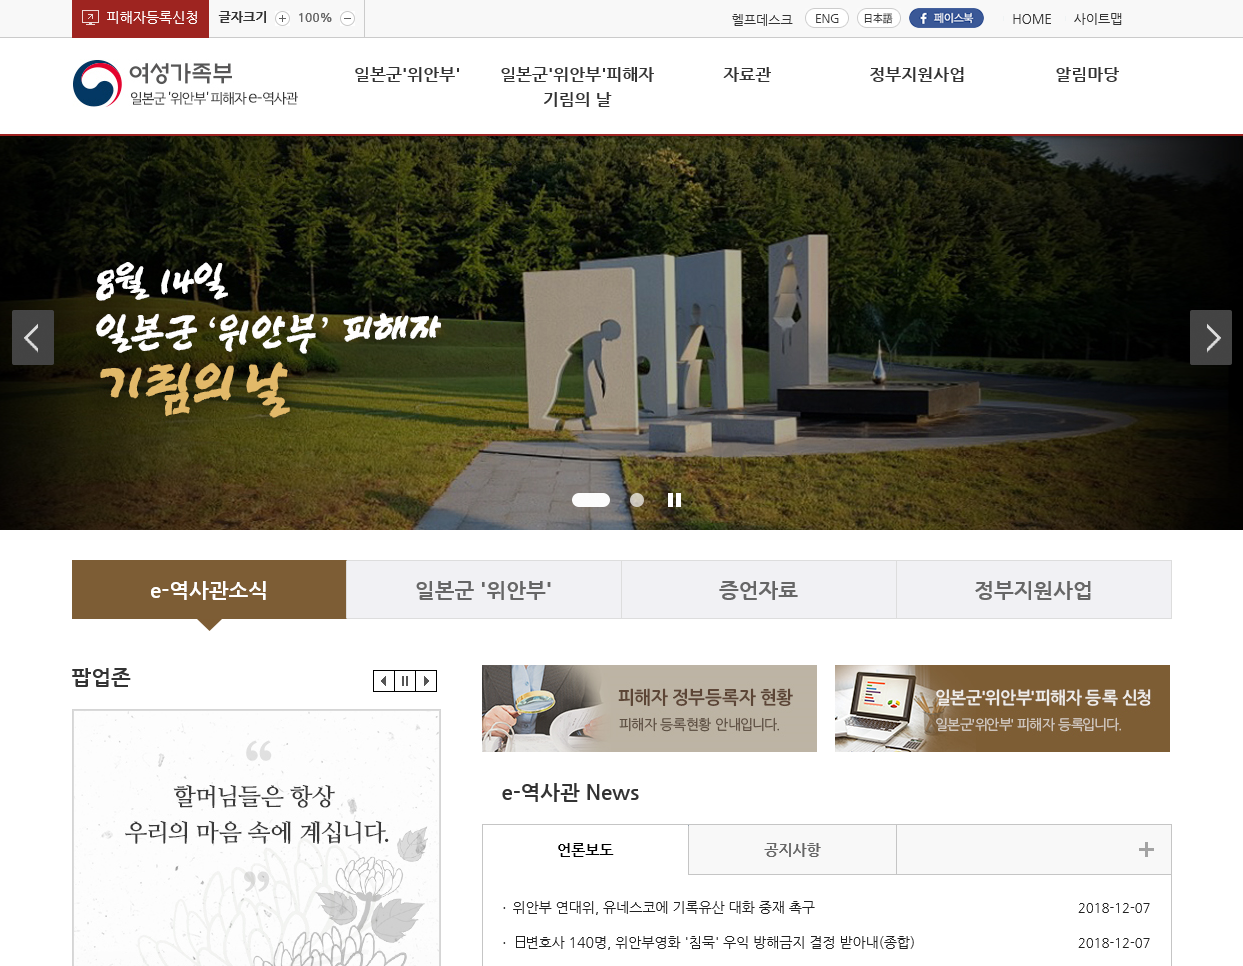 일본군'위안부'피해자e역사관 대표 홈페이지 스크릿샷